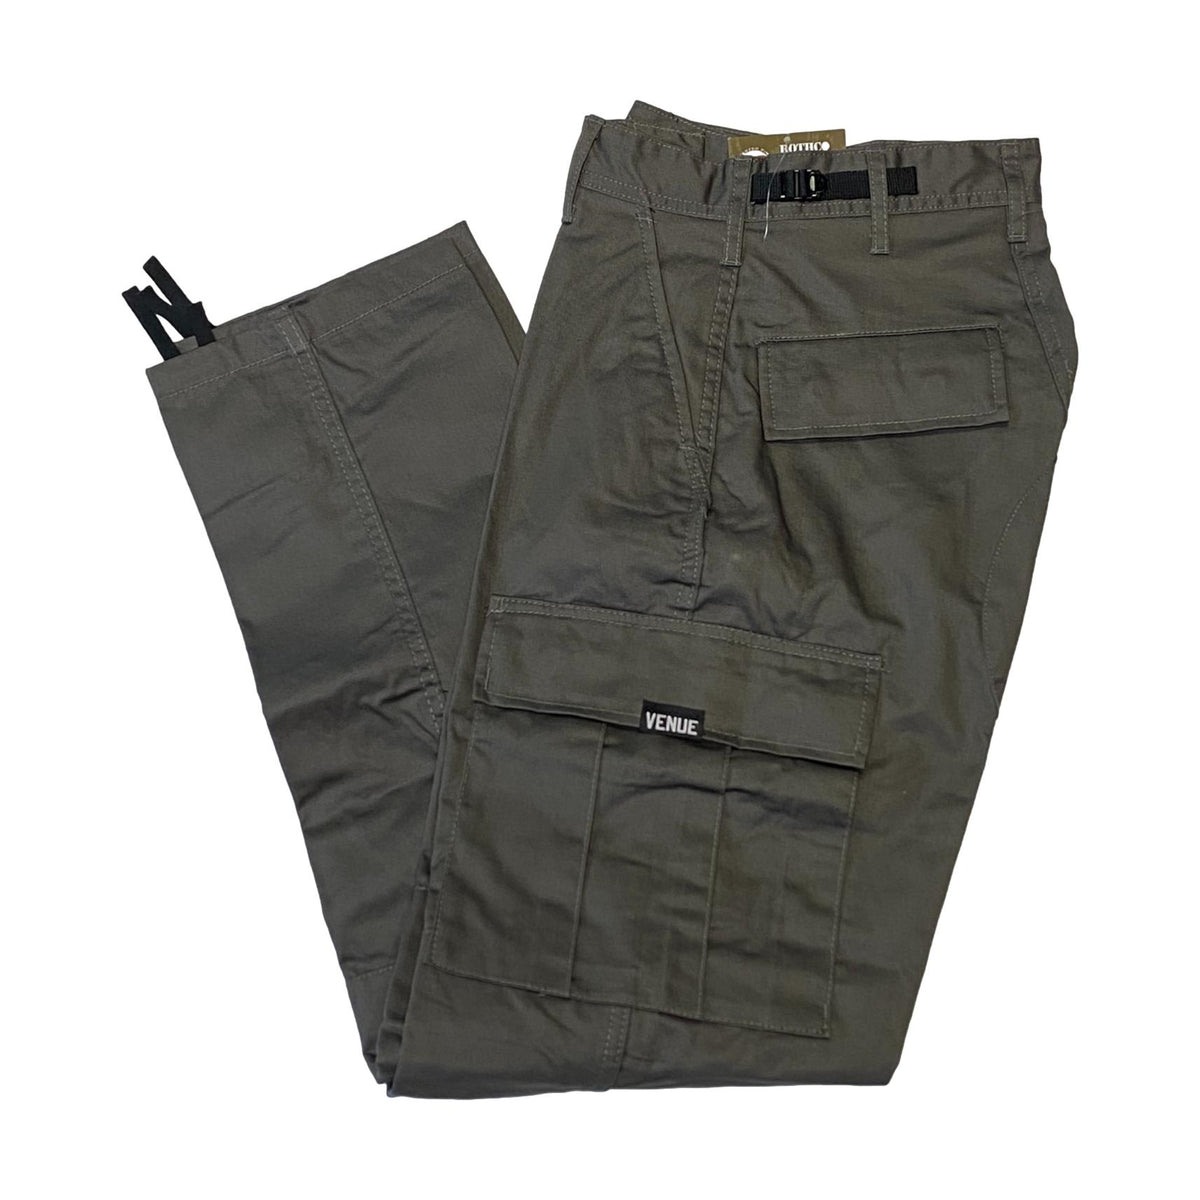 Venue Cargo Pants - Ranger Green